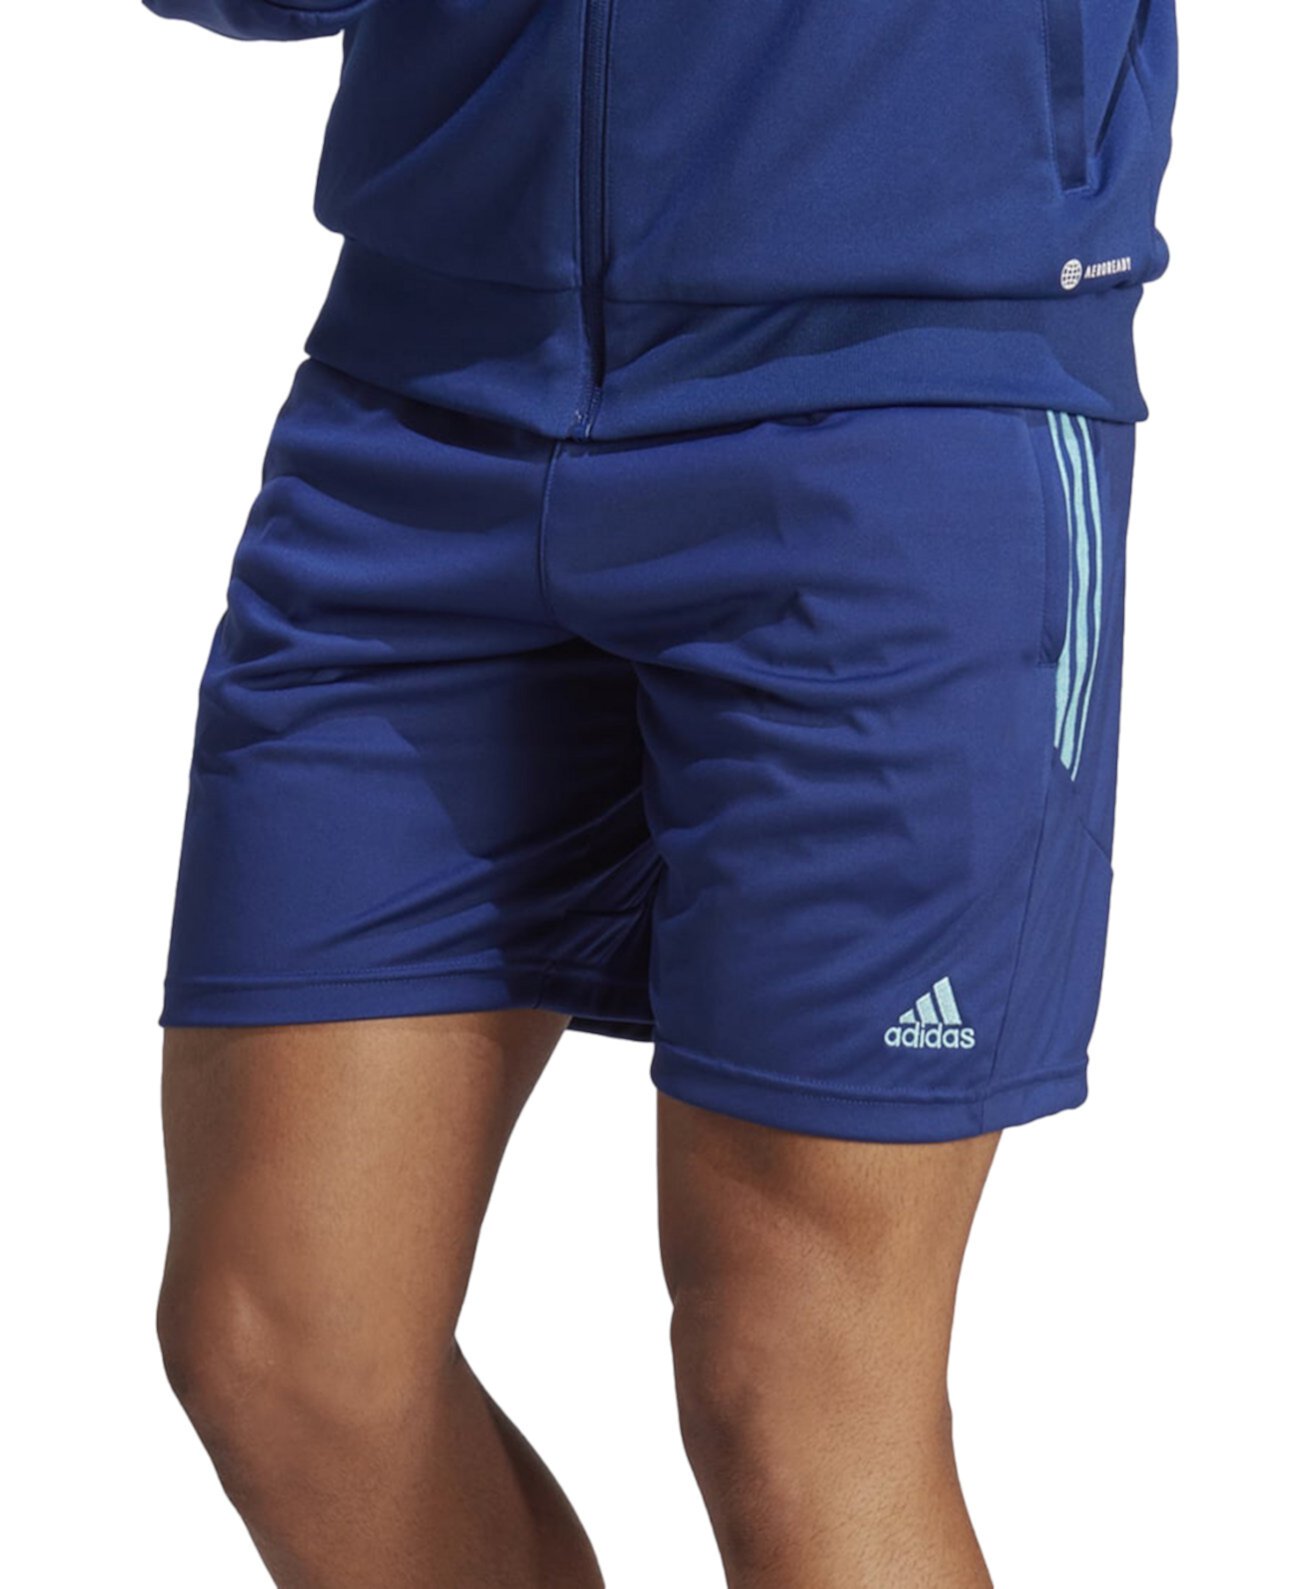 Легкие спортивные шорты с тремя полосками 8 дюймов Tiro Adidas